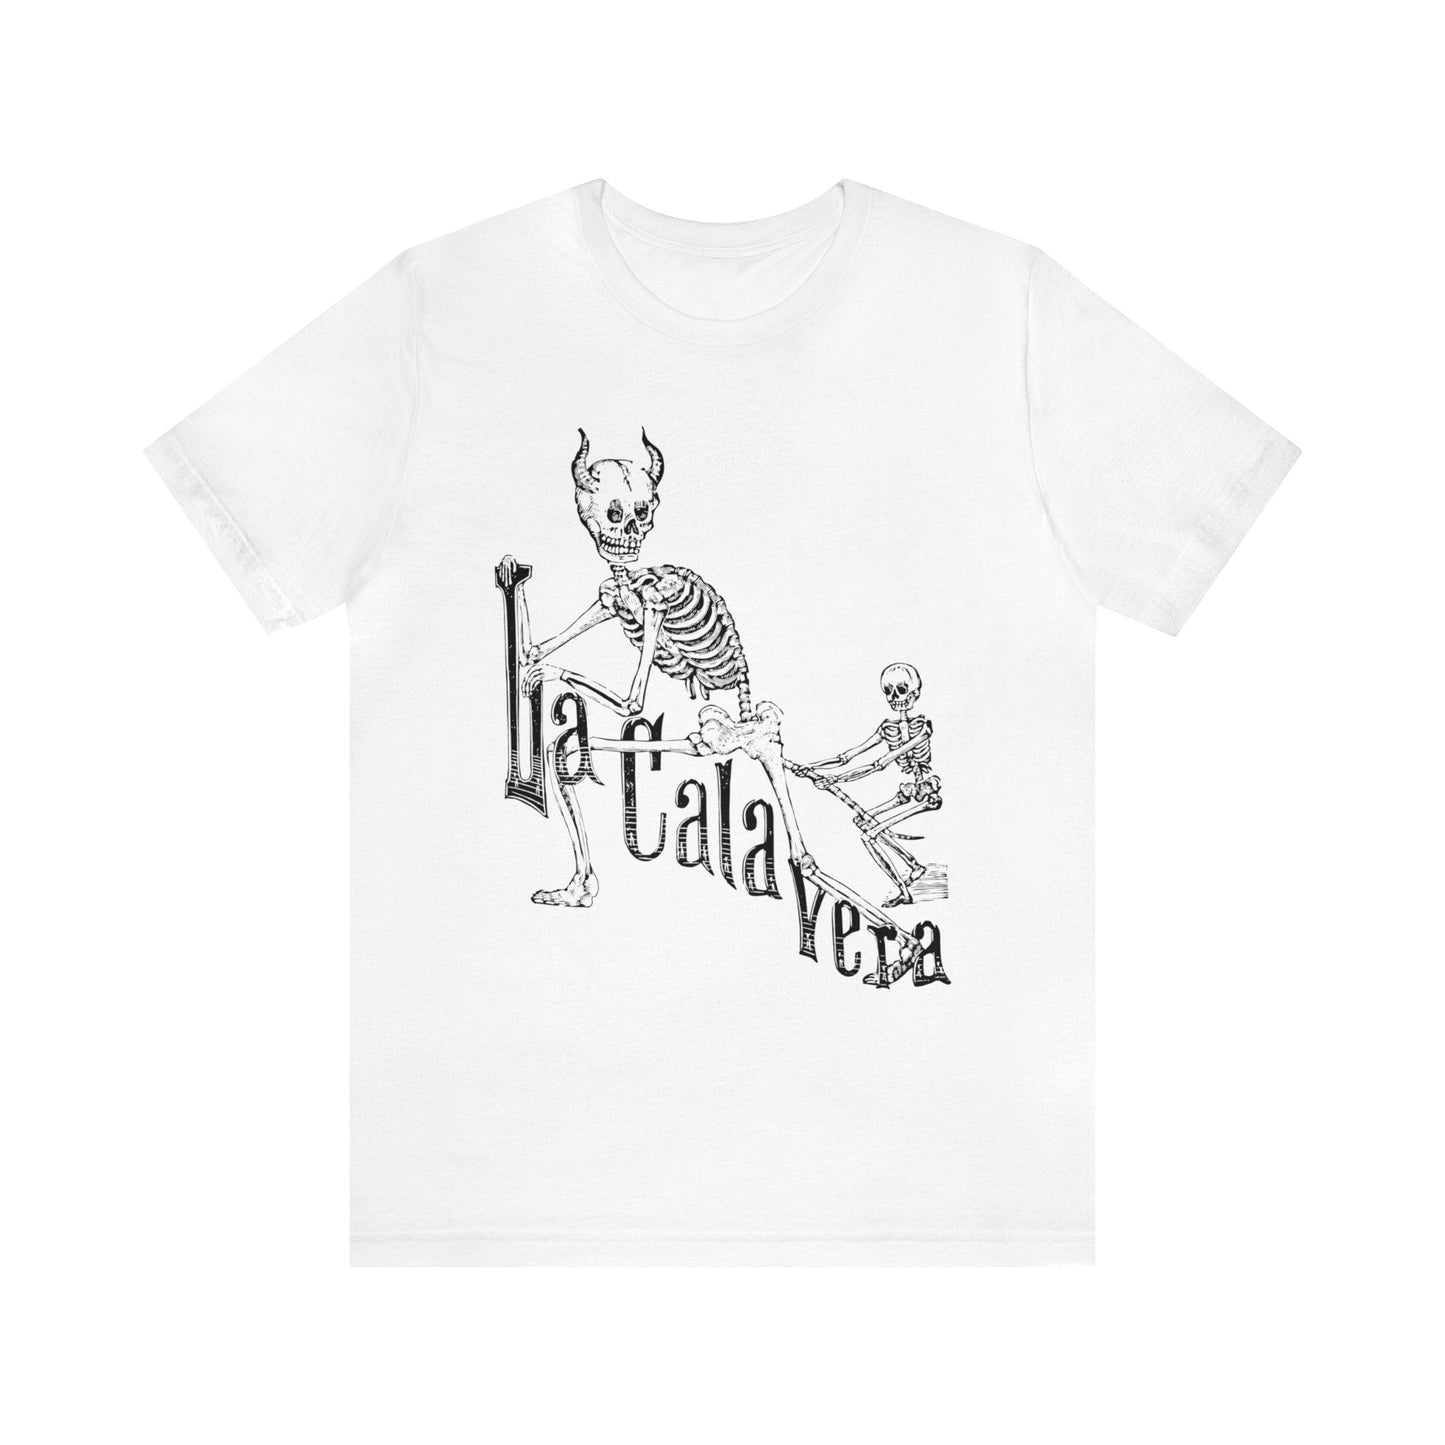 La Calavera - José Guadalupe Posada - Black Mass Apparel - T-Shirt